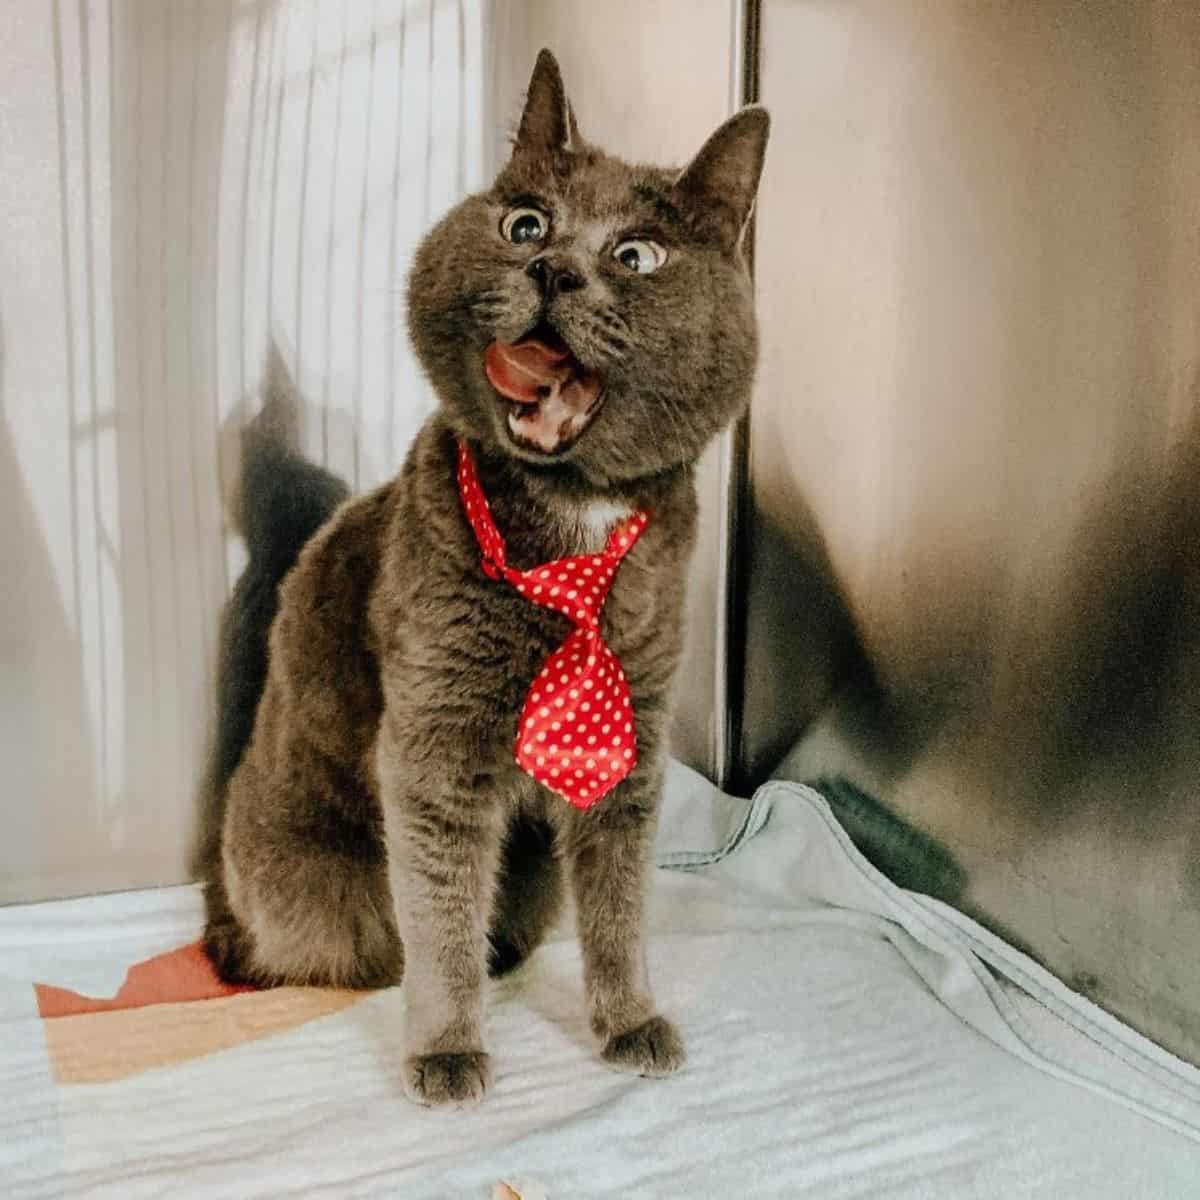 cat wearing a tie sitting